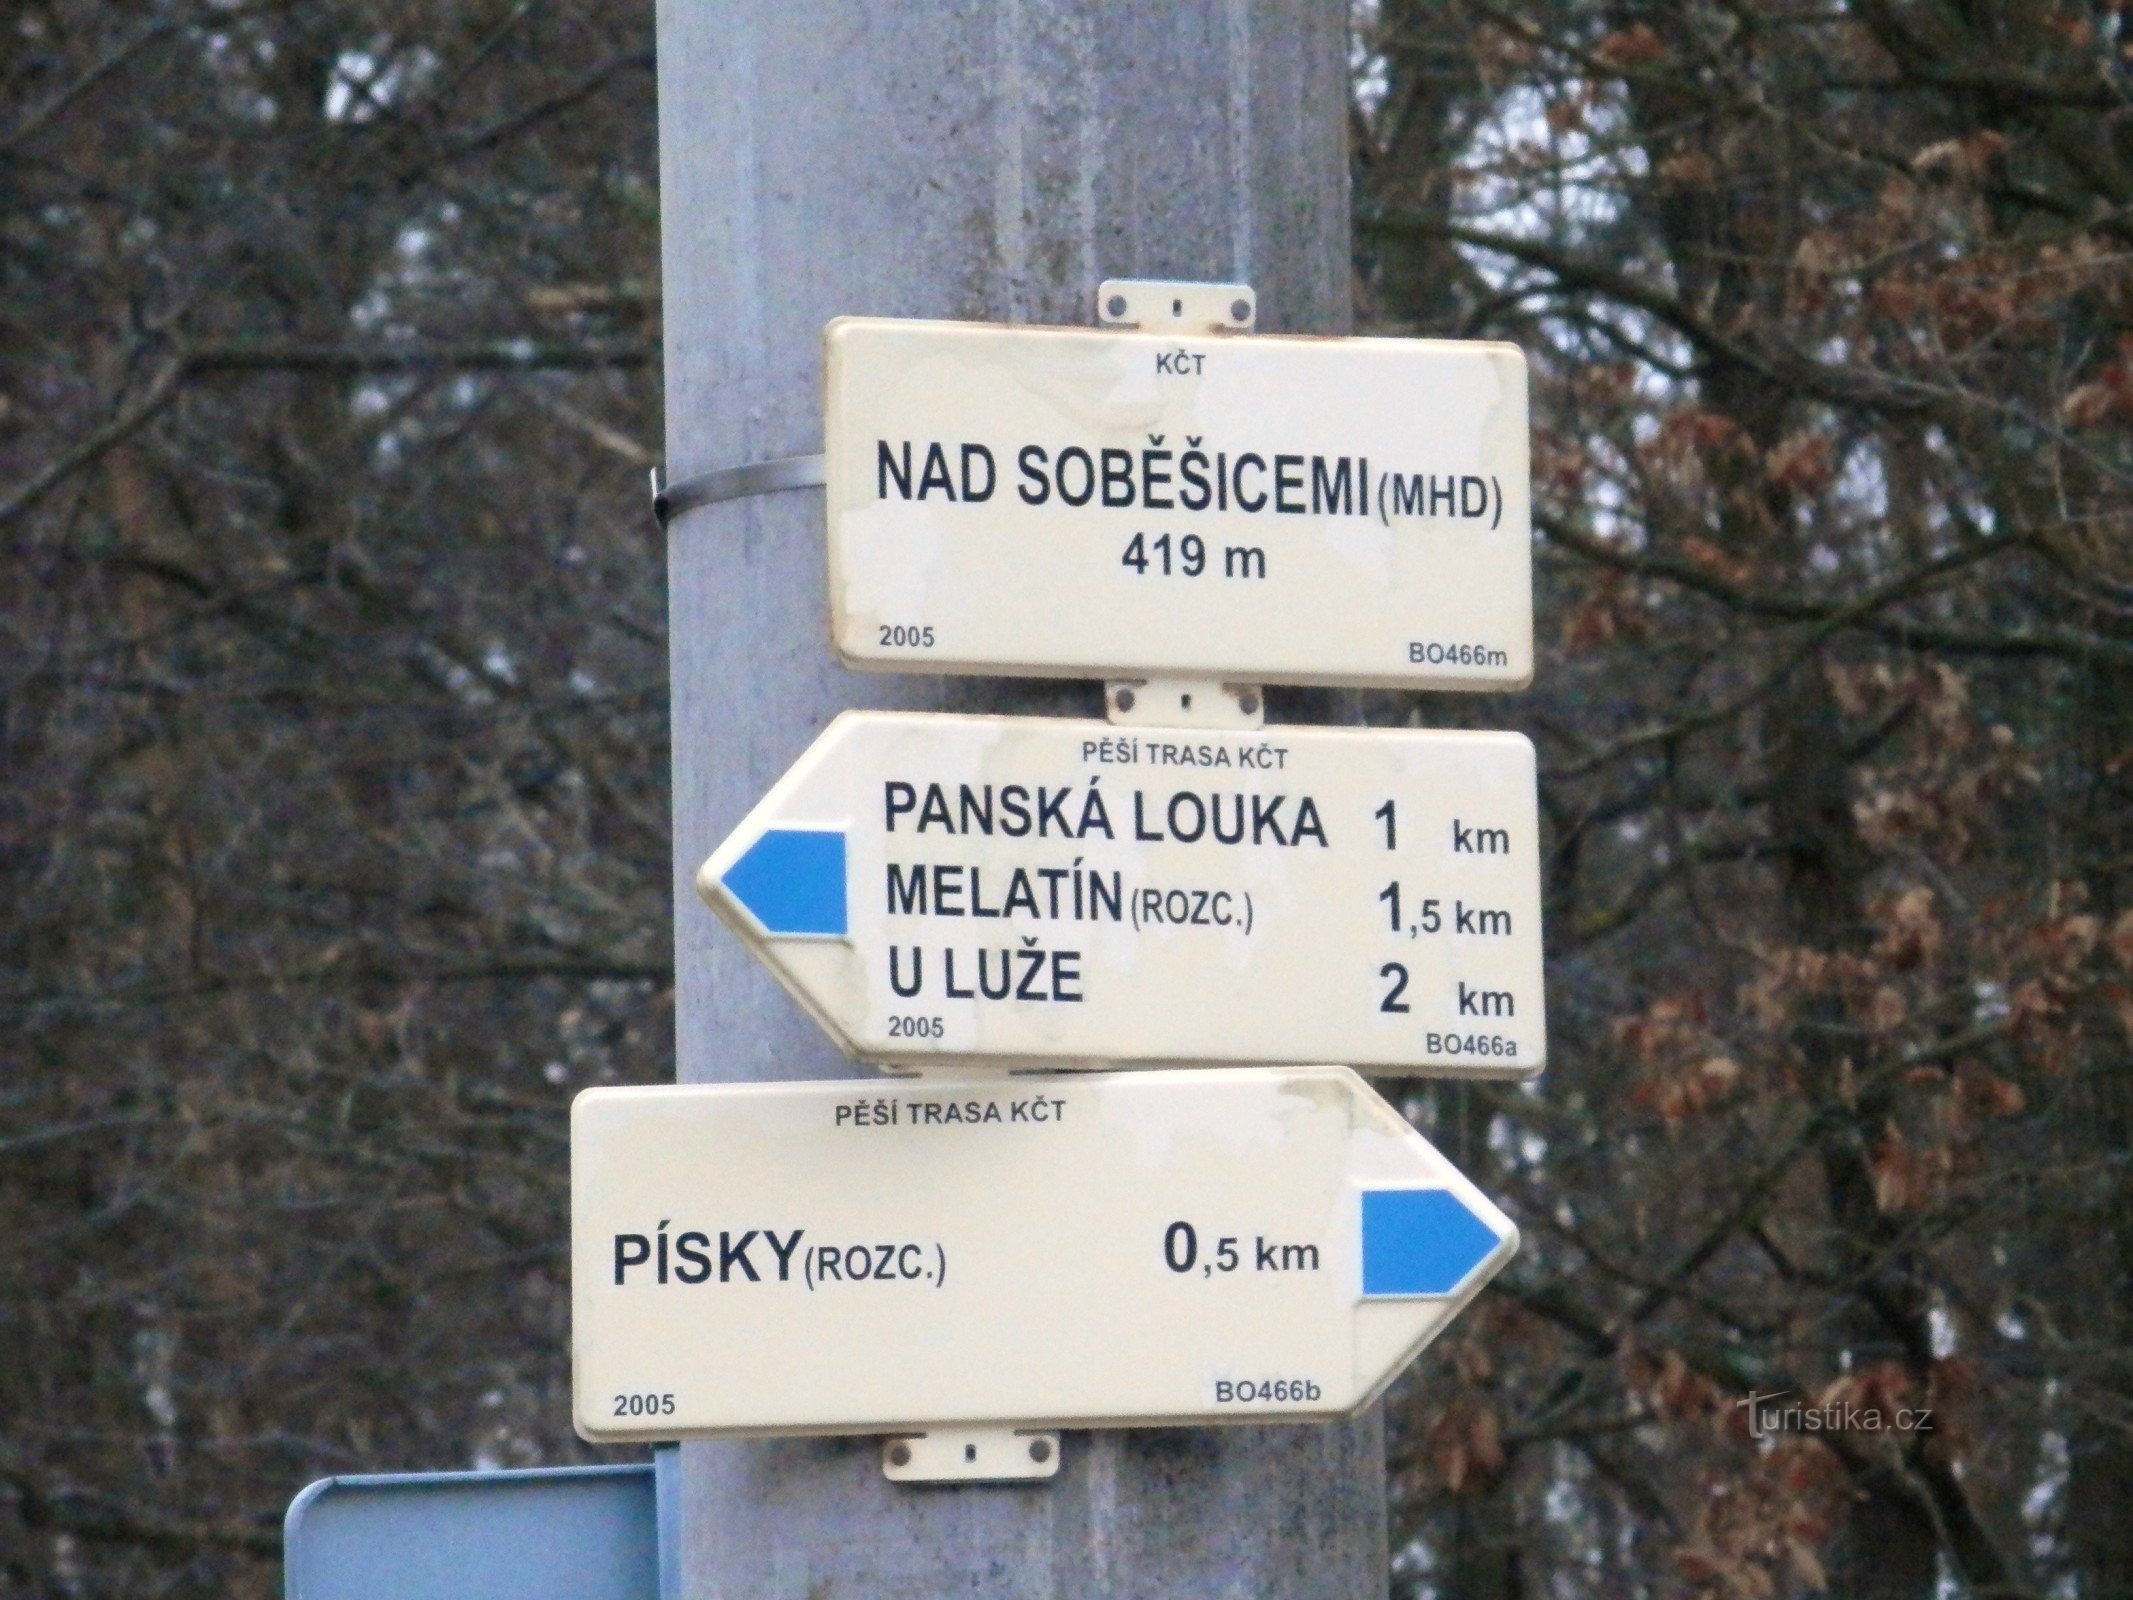 Nad Soběšicemi (komunikacja miejska) - skrzyżowanie oznakowanych szlaków turystycznych